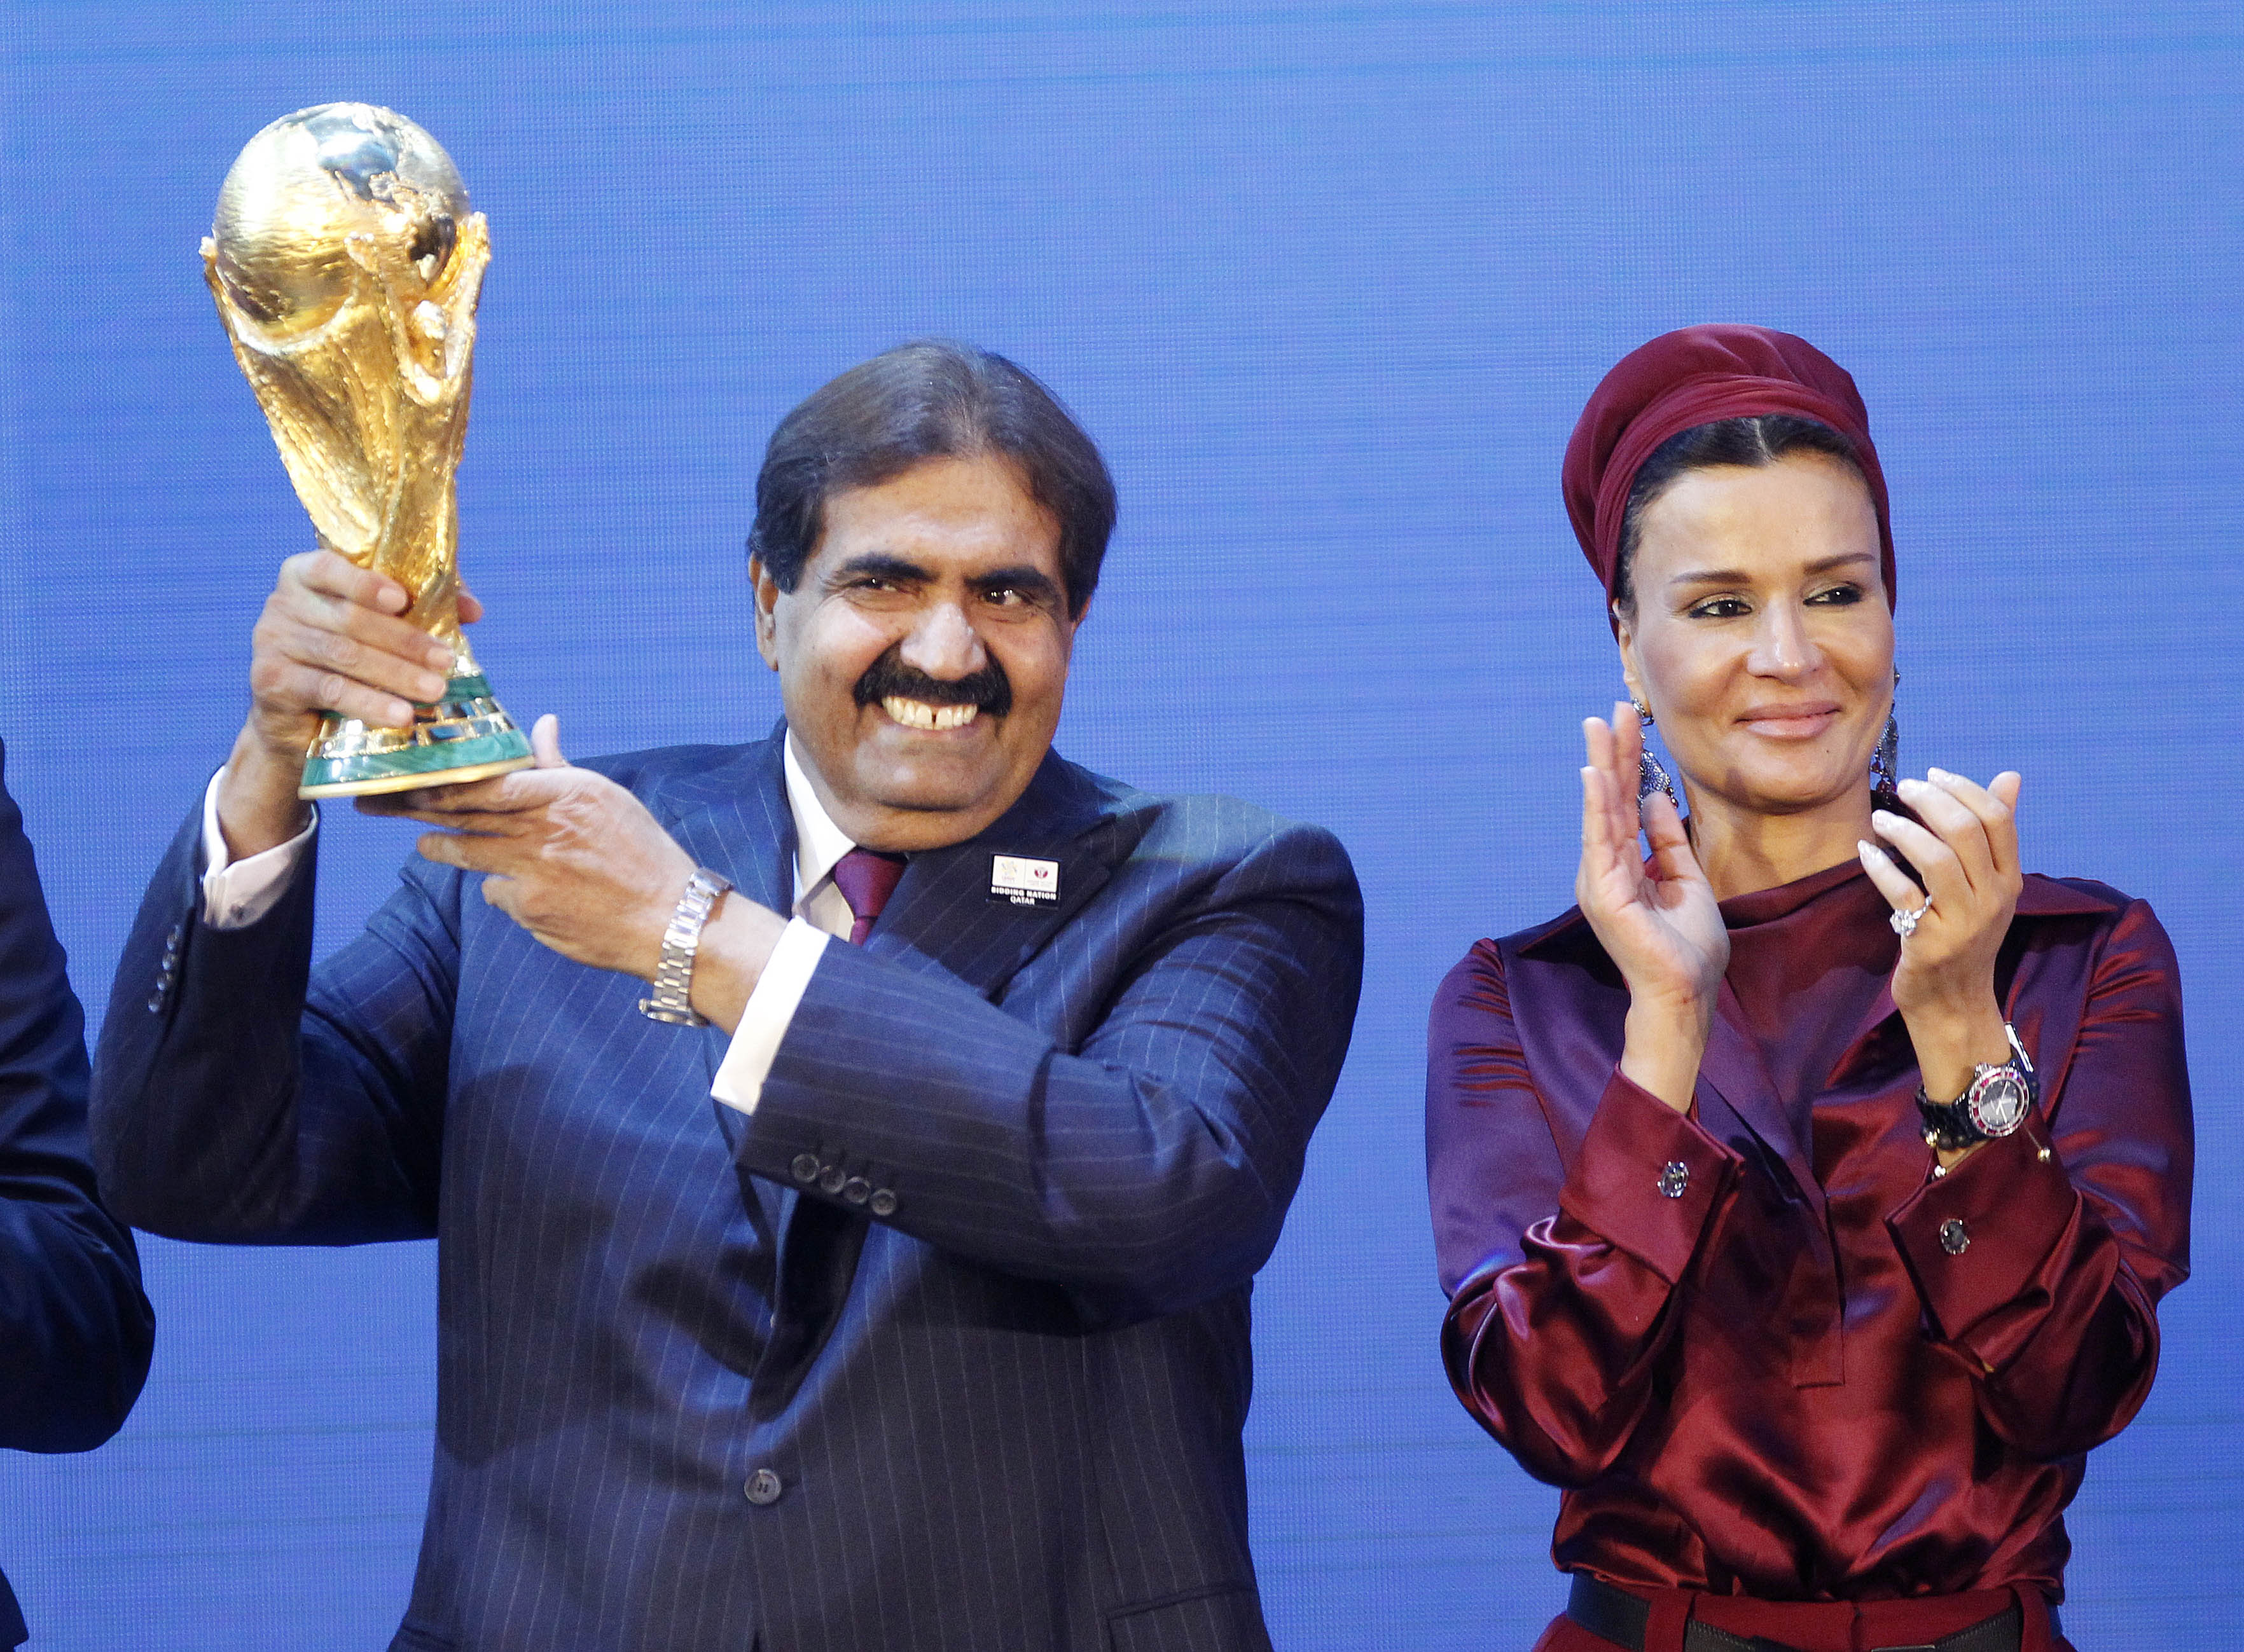 كأس العالم فى قطر